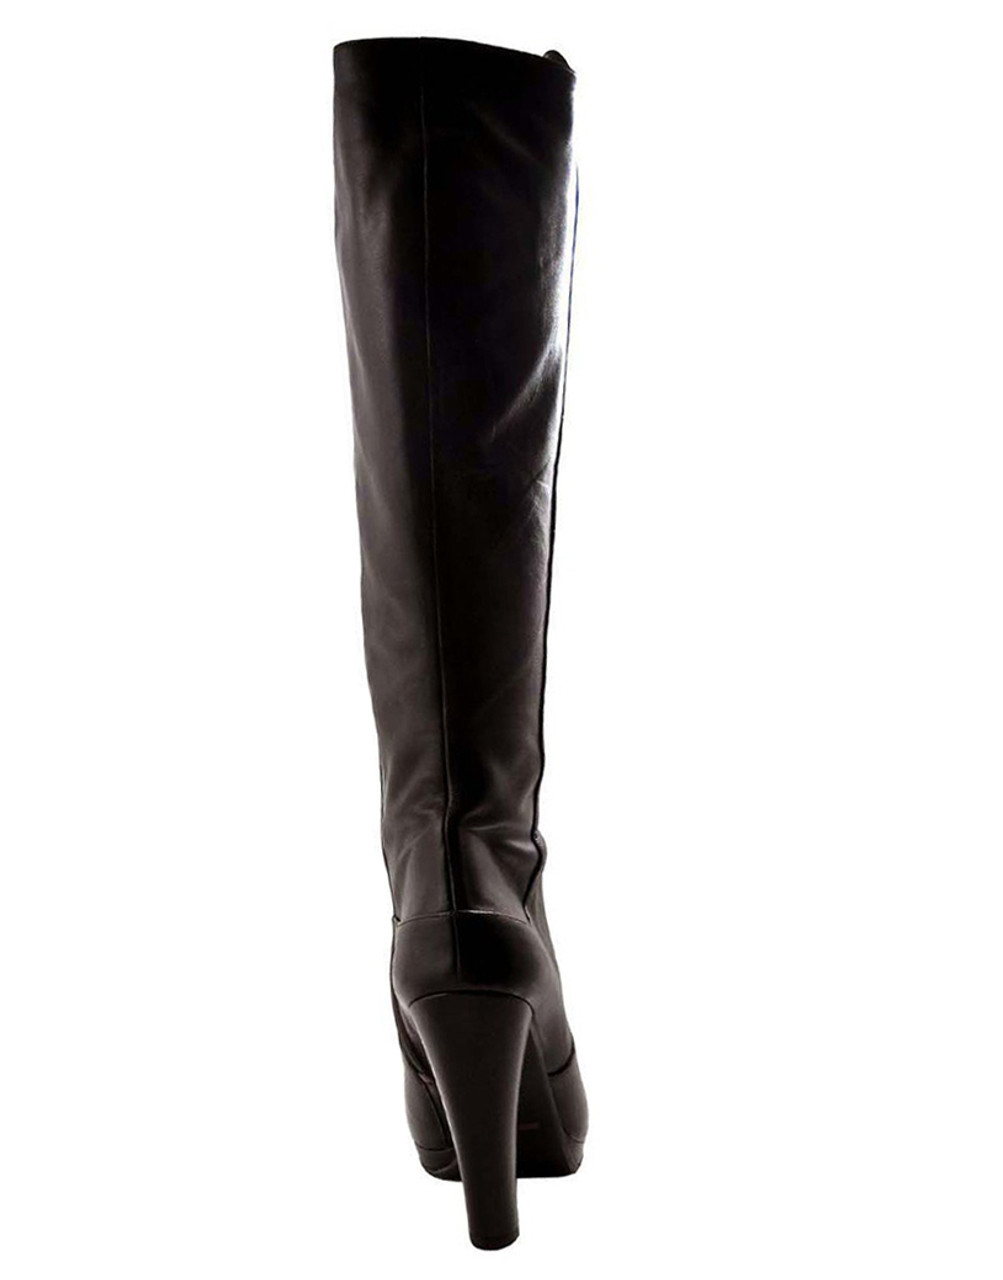 designer black knee high boots